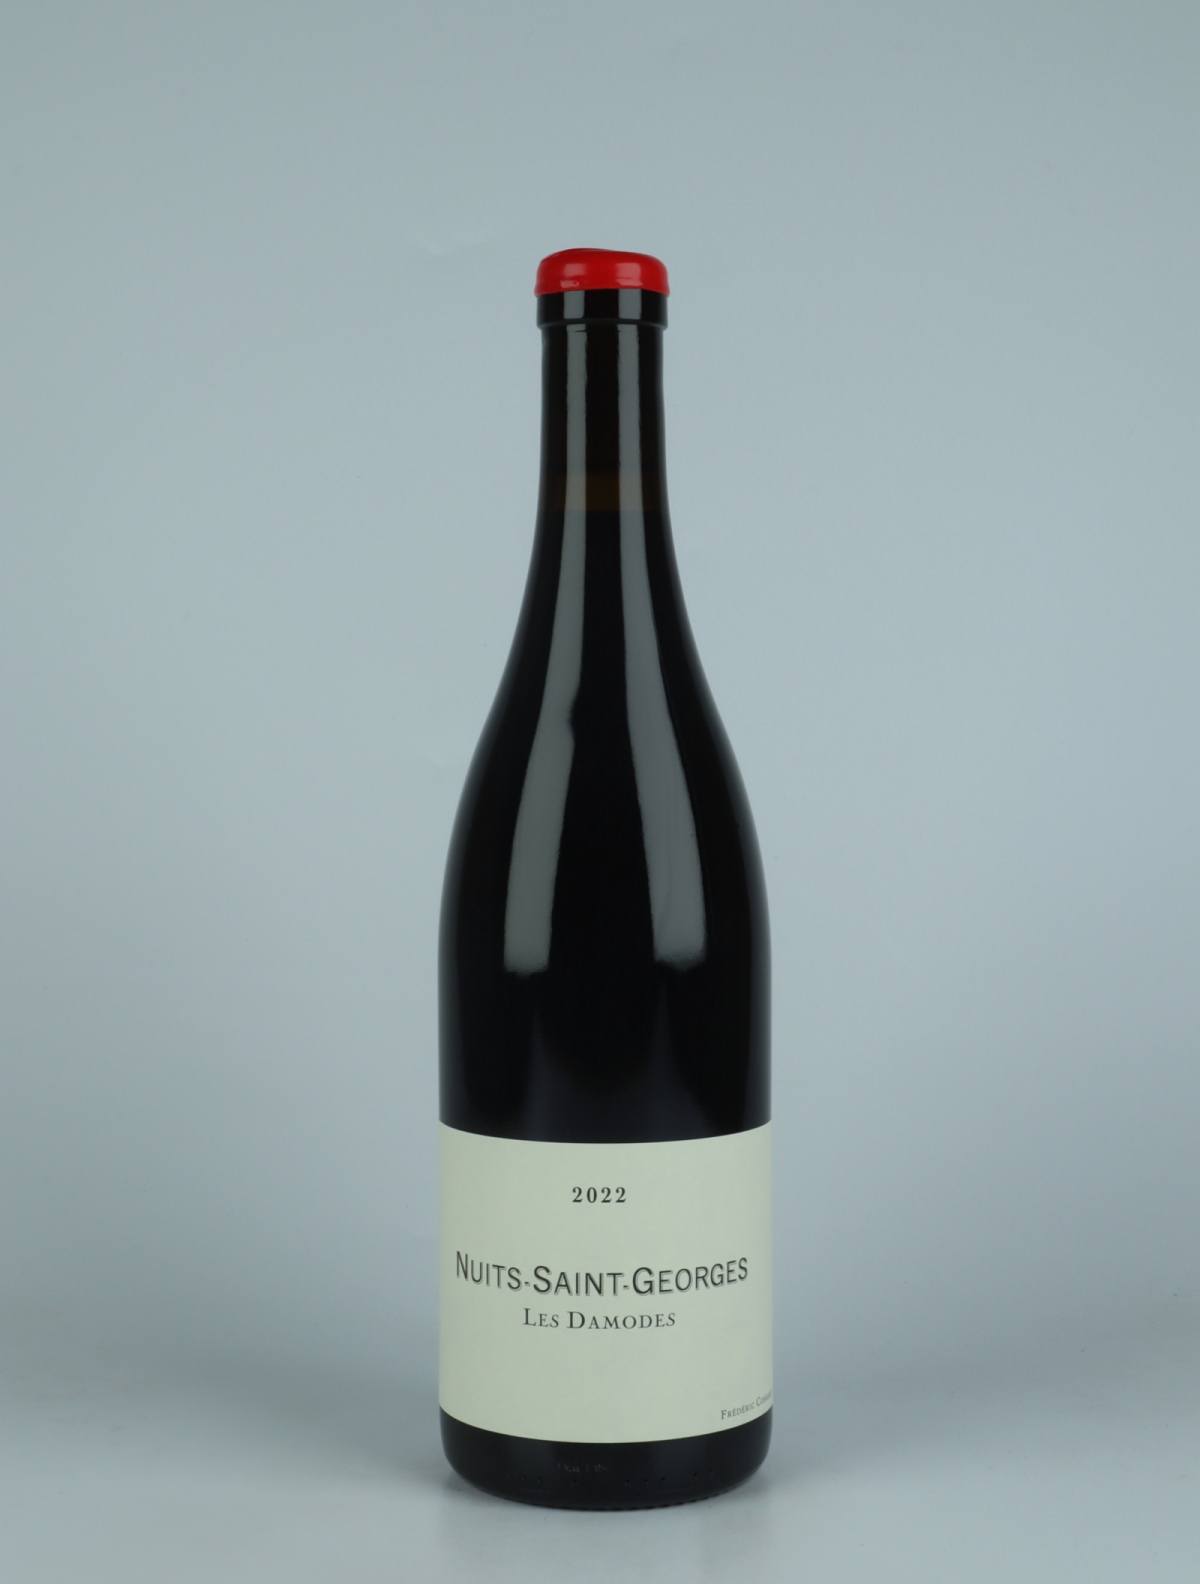 En flaske 2022 Nuits Saint Georges - Les Damodes Rødvin fra Frédéric Cossard, Bourgogne i Frankrig